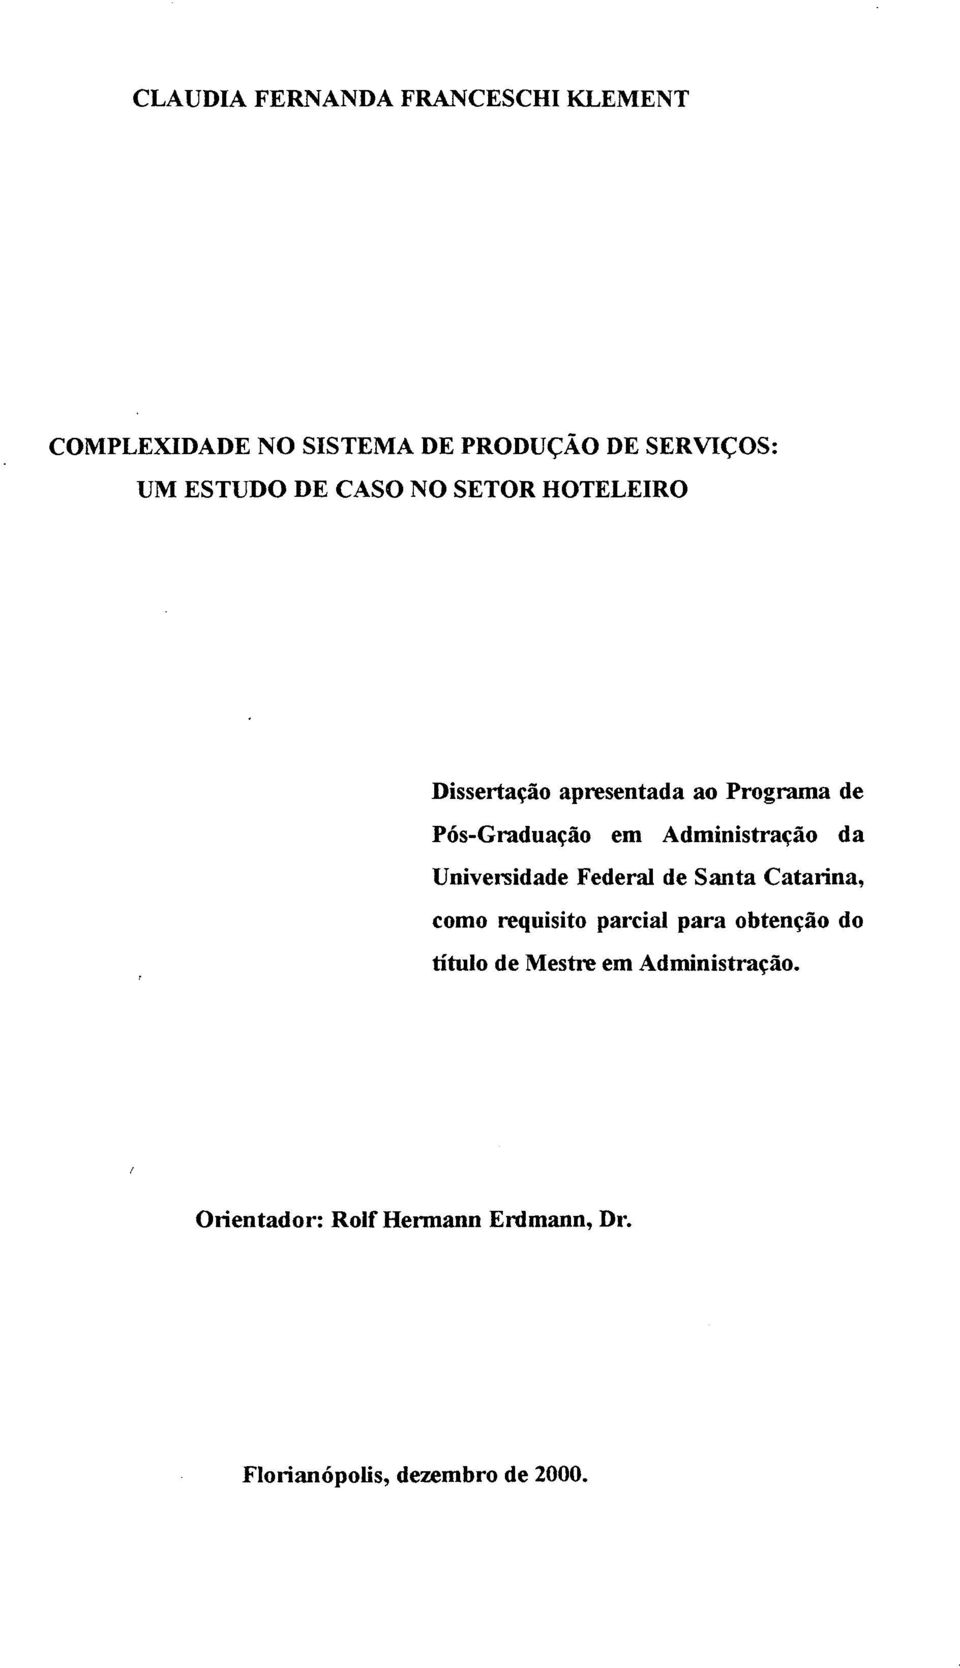 Administração da Universidade Federal de Santa Catarina, como requisito parcial para obtenção